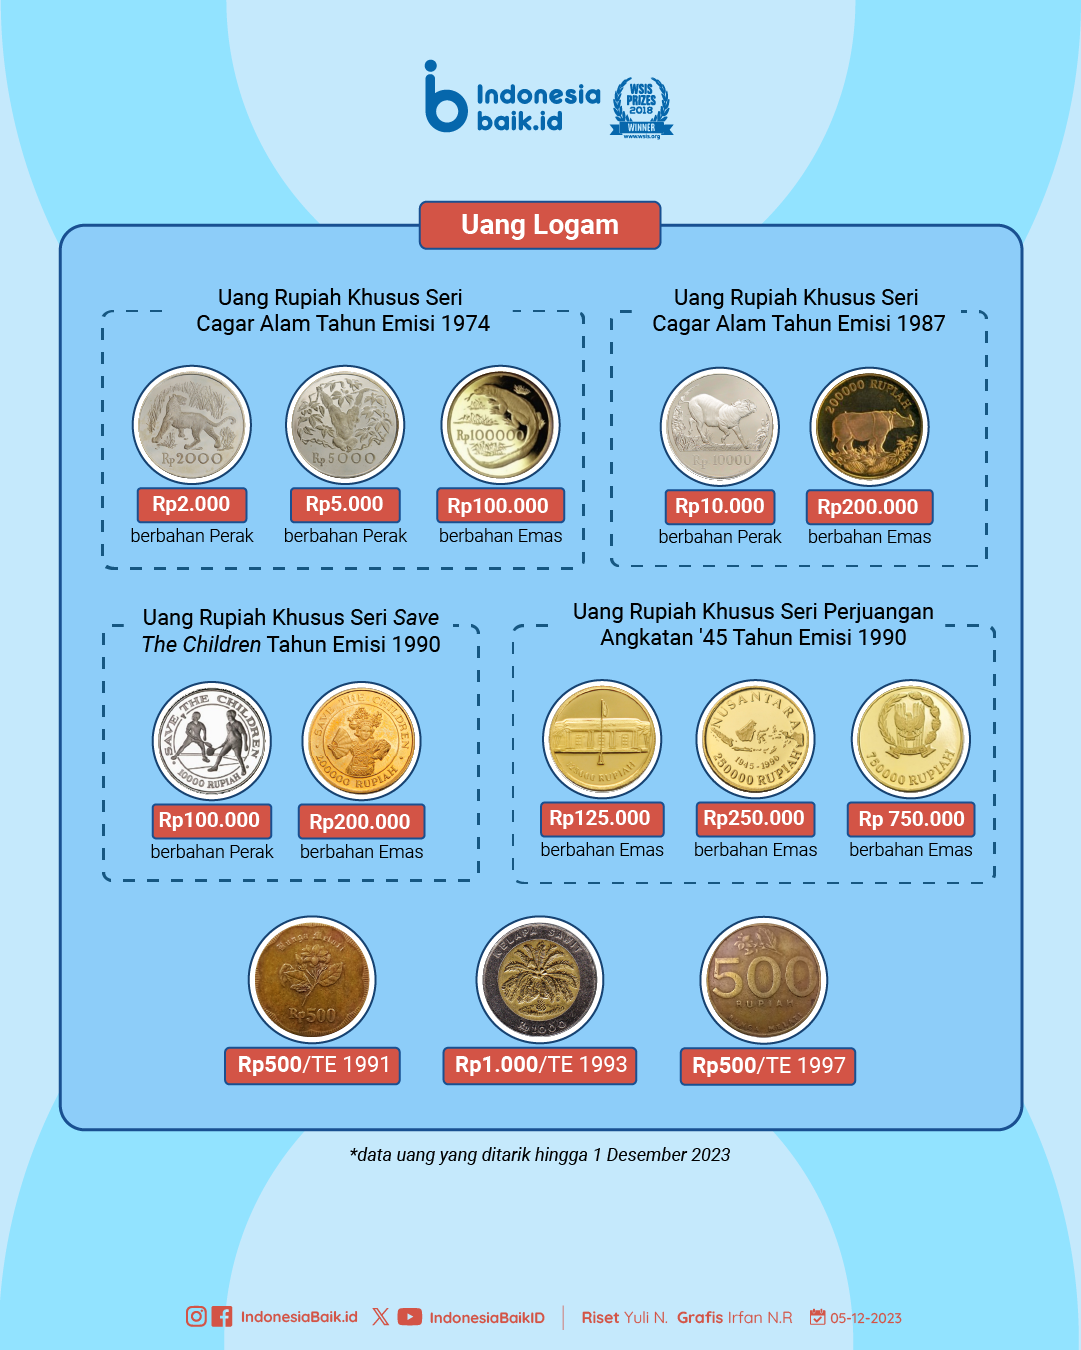 Daftar uang rupiah yang tidak diedarkan lagi | Sumber: Indonesia Baik